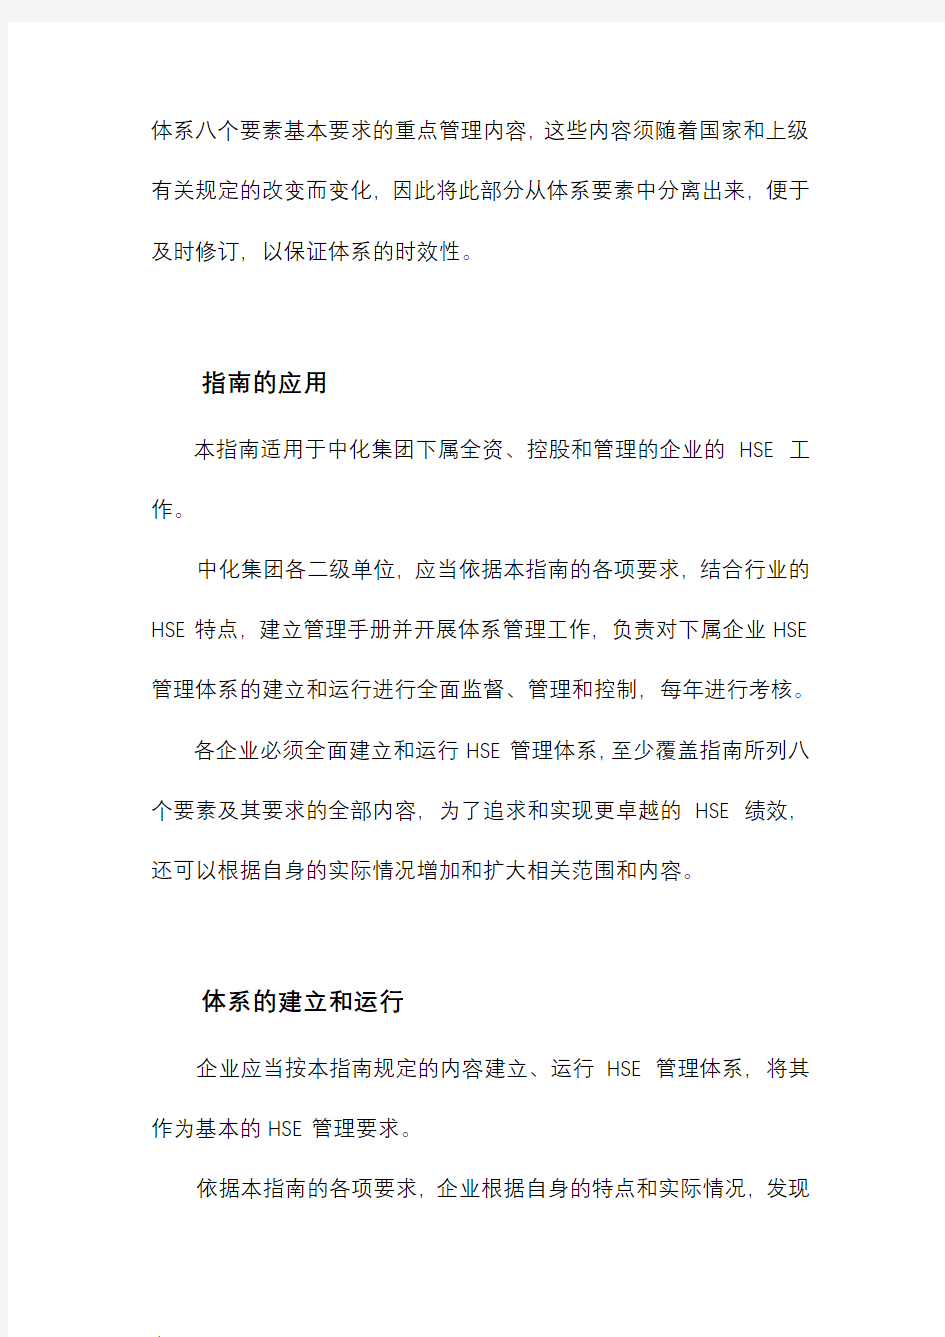 中国中化集团公司企业HSE管理体系指南